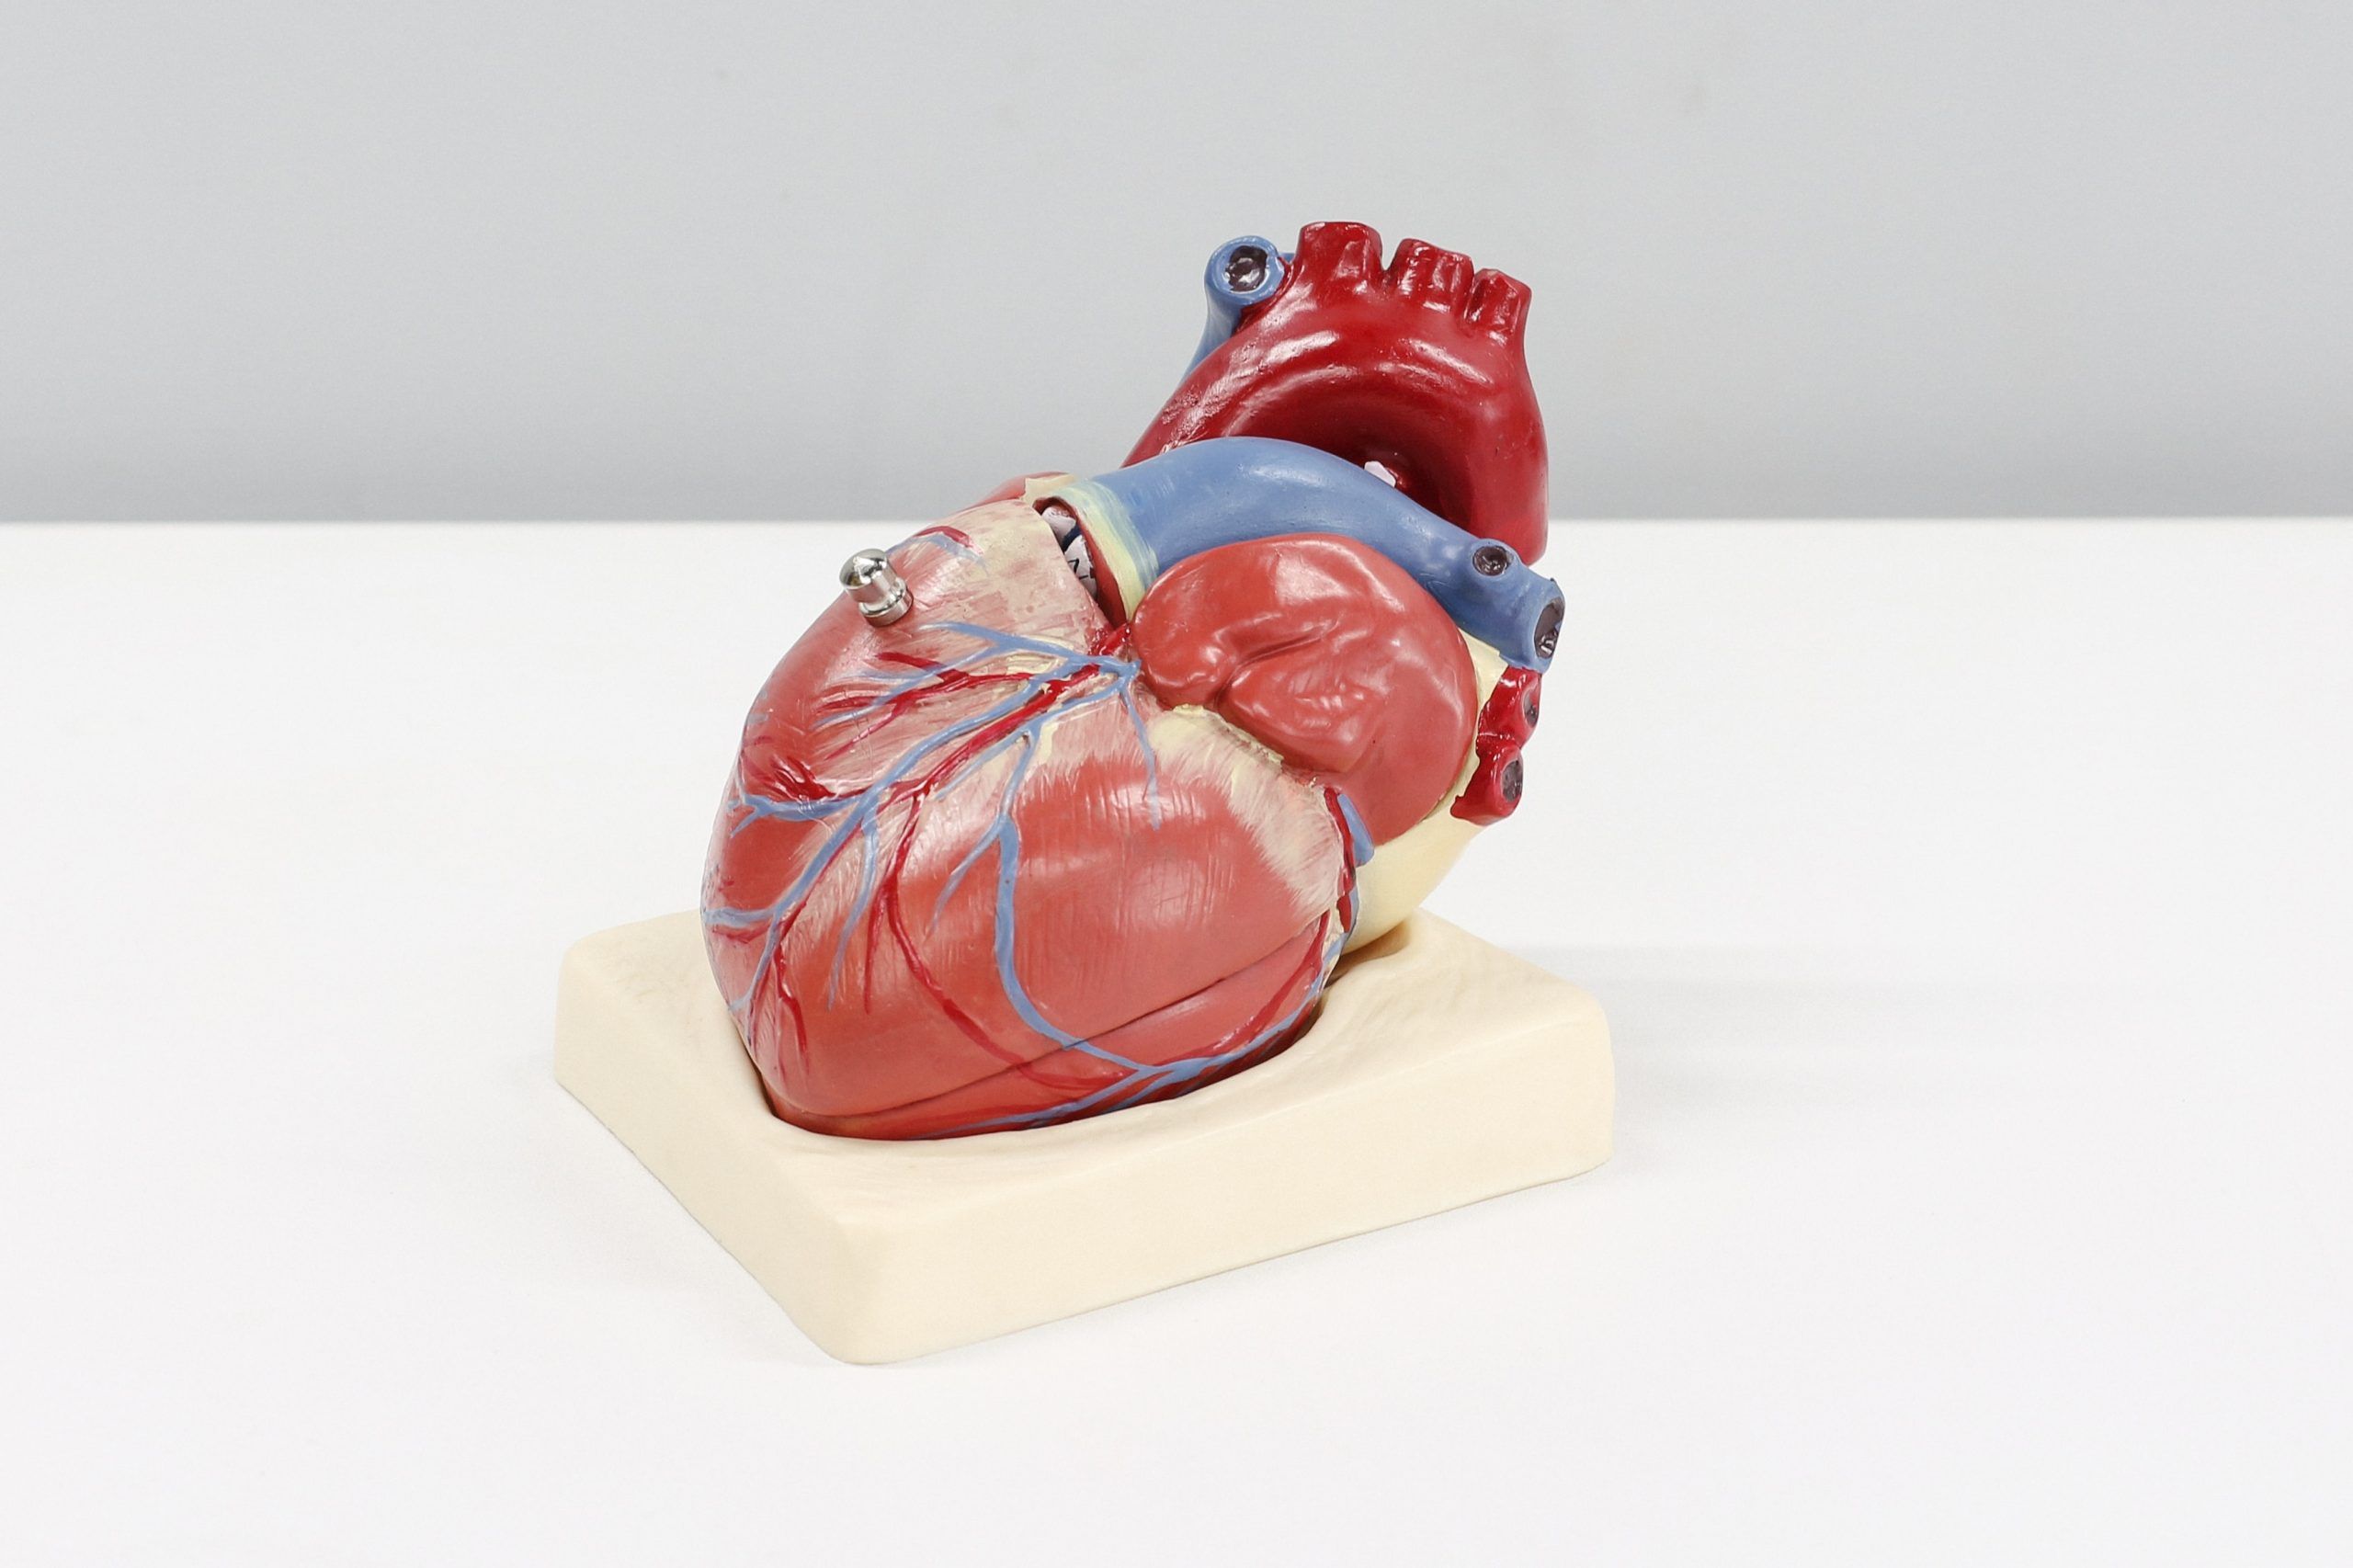 Modelo médico de un corazón humano